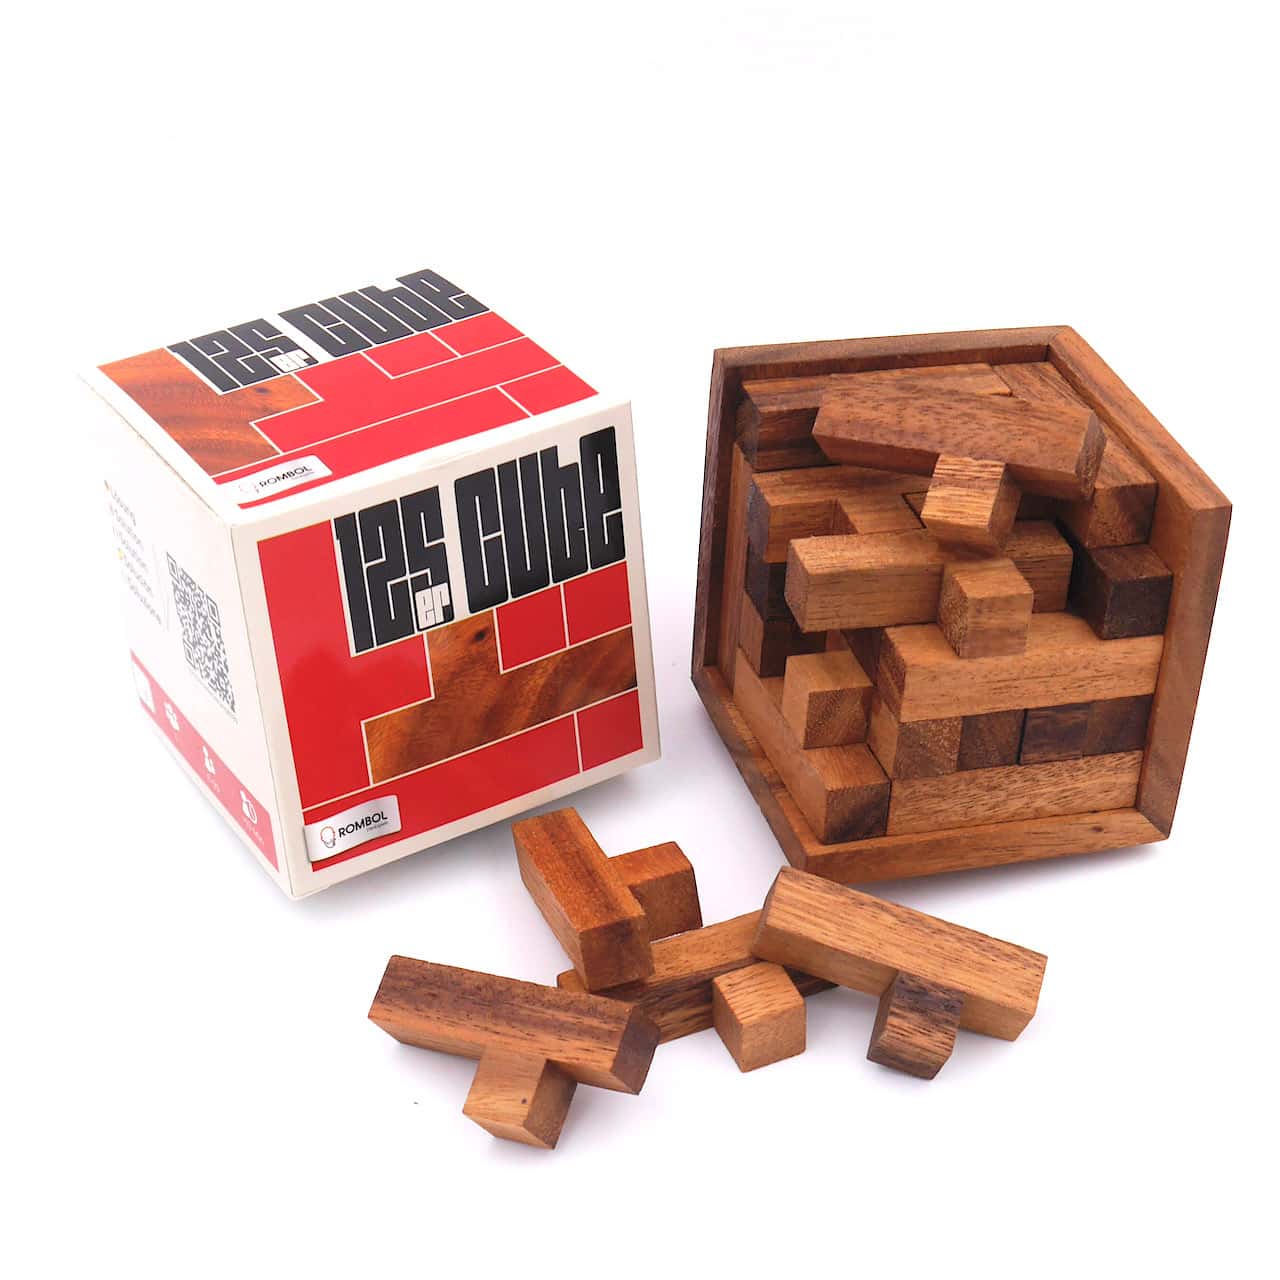 125er-Cube - herausforderndes Denkspiel aus edlem Holz für Knobel-Fans